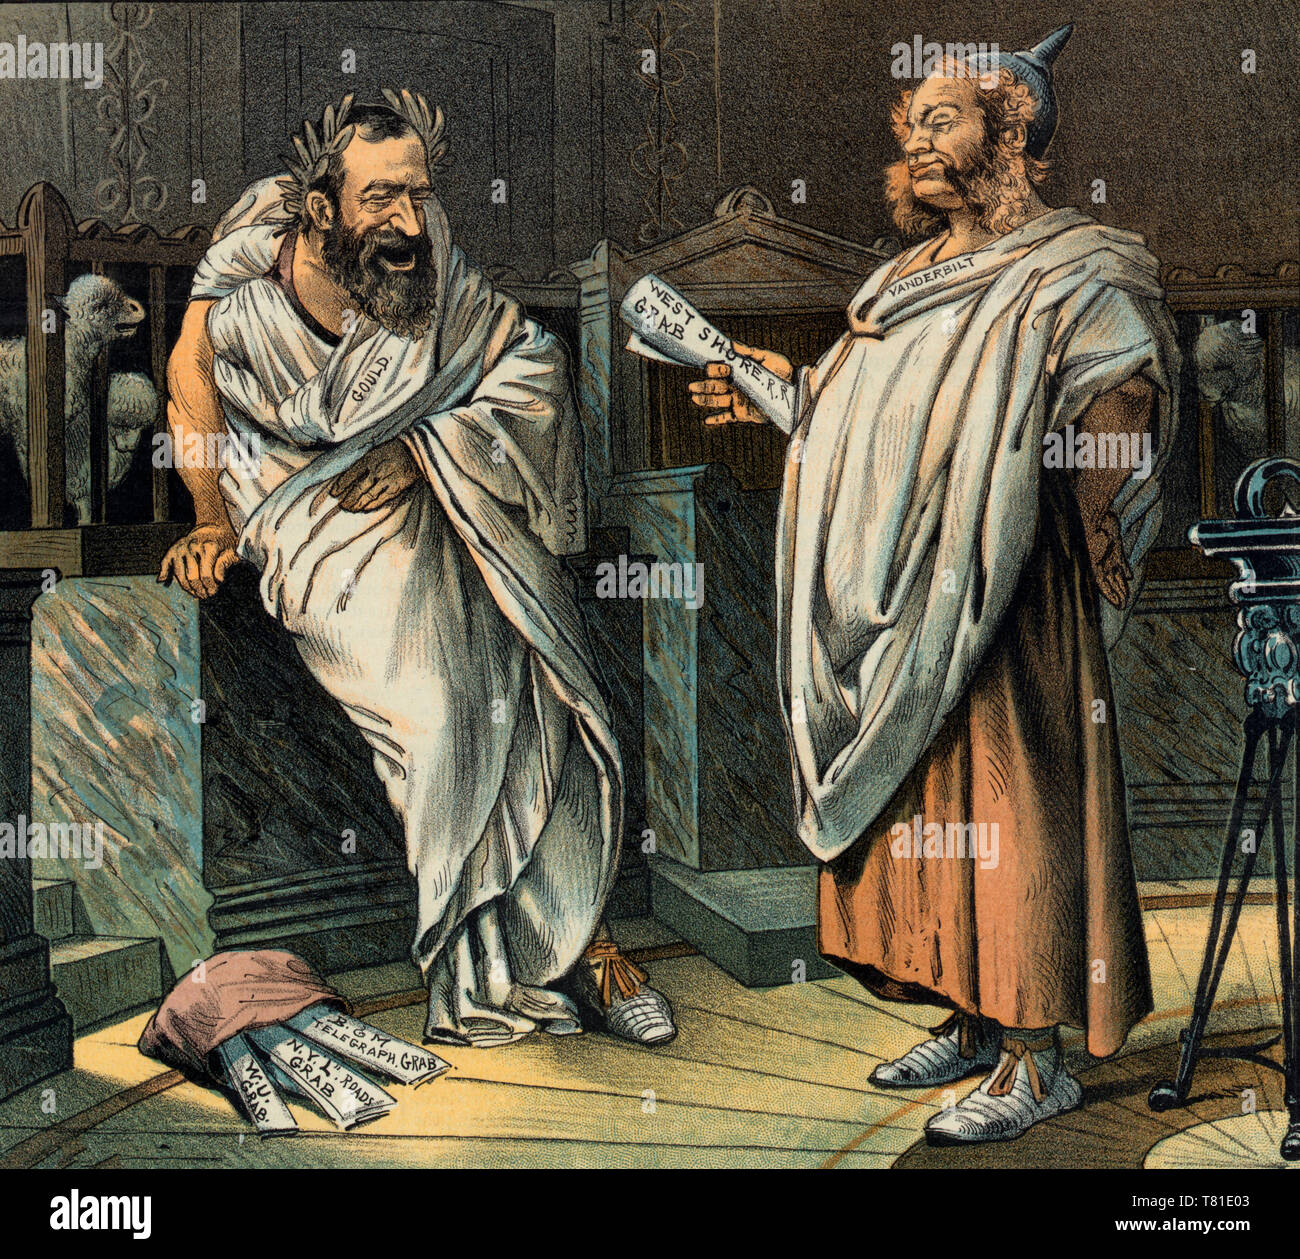 Les deux gobblers - Caricature politique montre Jay Gould et William H. Vanderbilt portant des toges romaines, riant entre eux-mêmes comme ils 'avaler' up telegraph et cies à ajouter à leurs monopoles. 1885 Banque D'Images